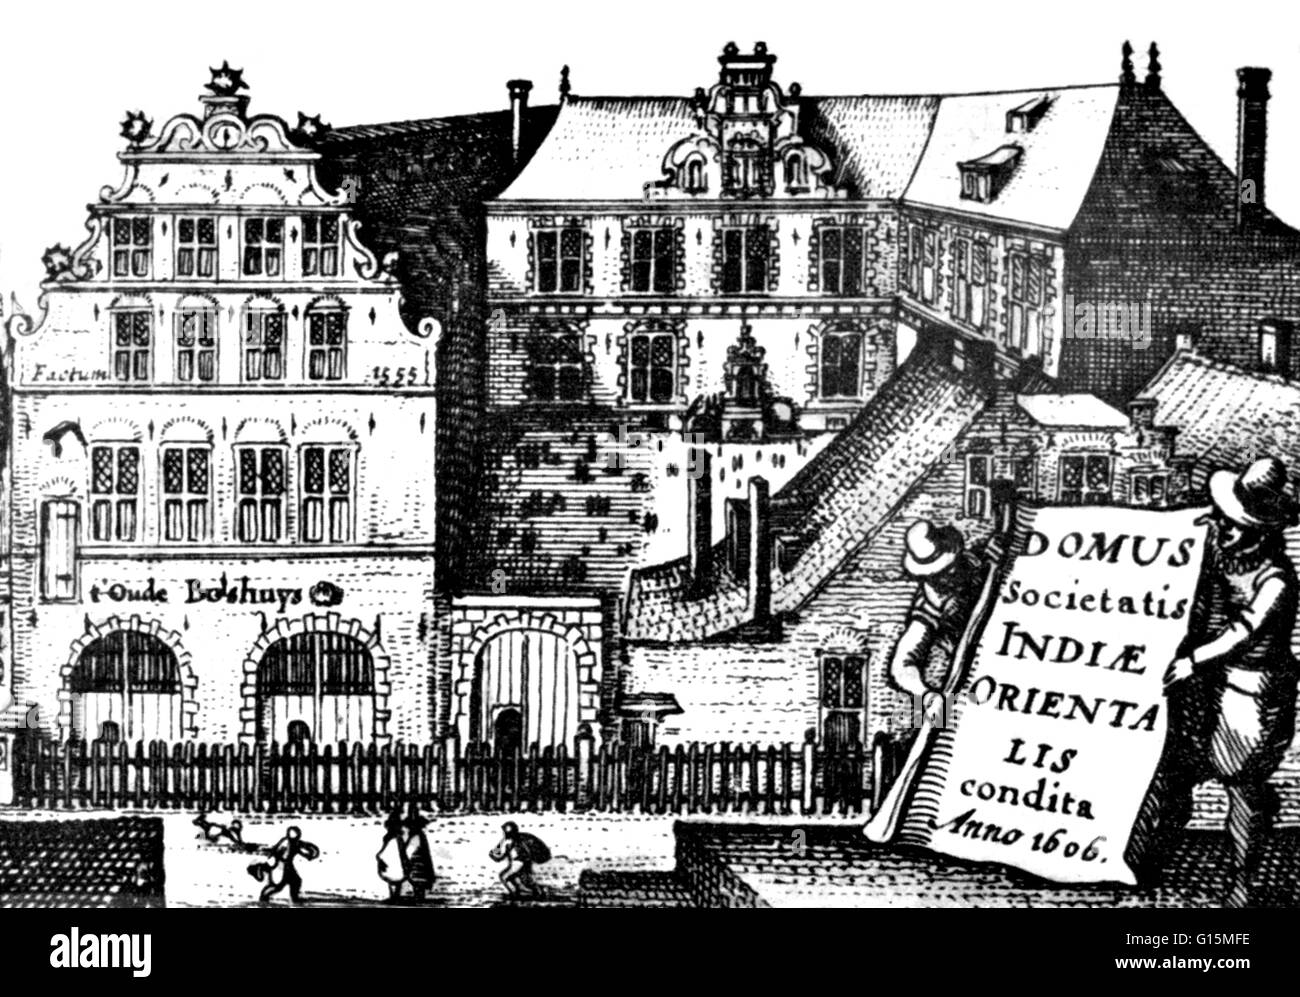 Oost-Indisch Huis (East India House) ist eine frühe 17. Jahrhundert Gebäude im Zentrum von Amsterdam. Es war ein Sitz der niederländischen Ostindien-Kompanie. Die Niederländische Ostindien-Kompanie war eine gemietete Firma gegründet 1602, bei den Generalstaaten Stockfoto